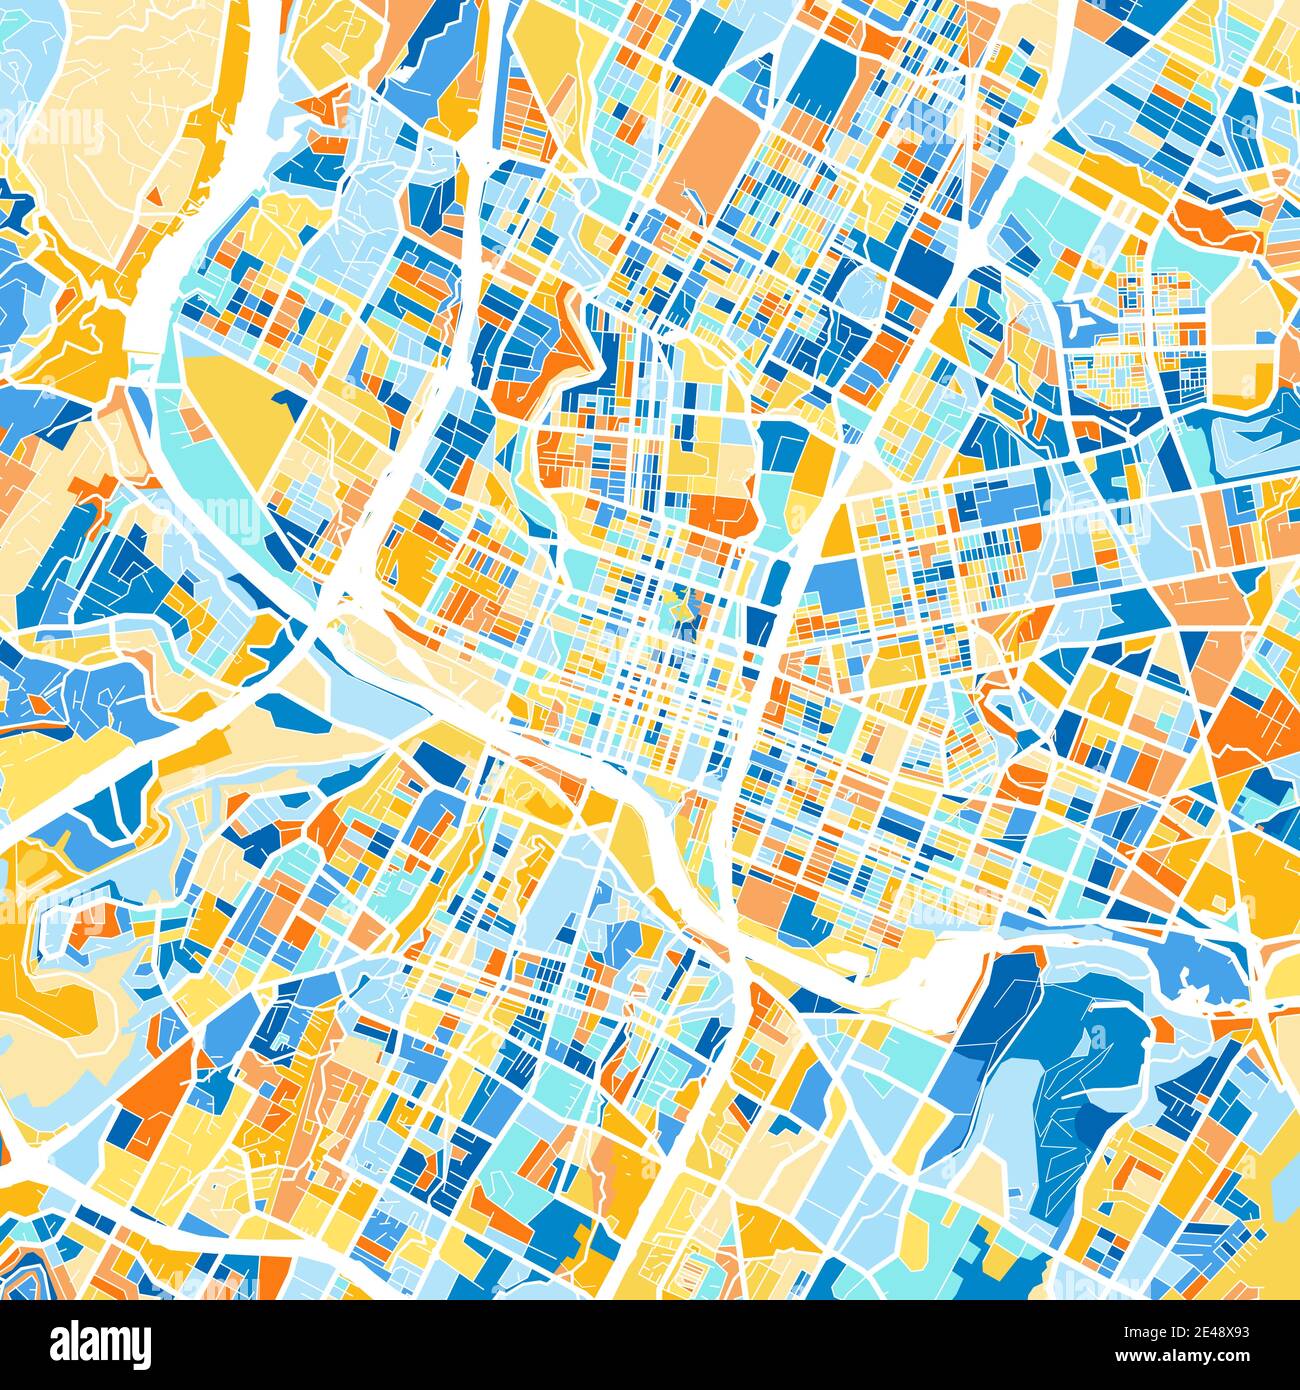 Farbkunstkarte von Austin, Texas, UnitedStates in Blau und Orangen. Die Farbabstufungen in der Austin-Karte folgen einem zufälligen Muster. Stock Vektor